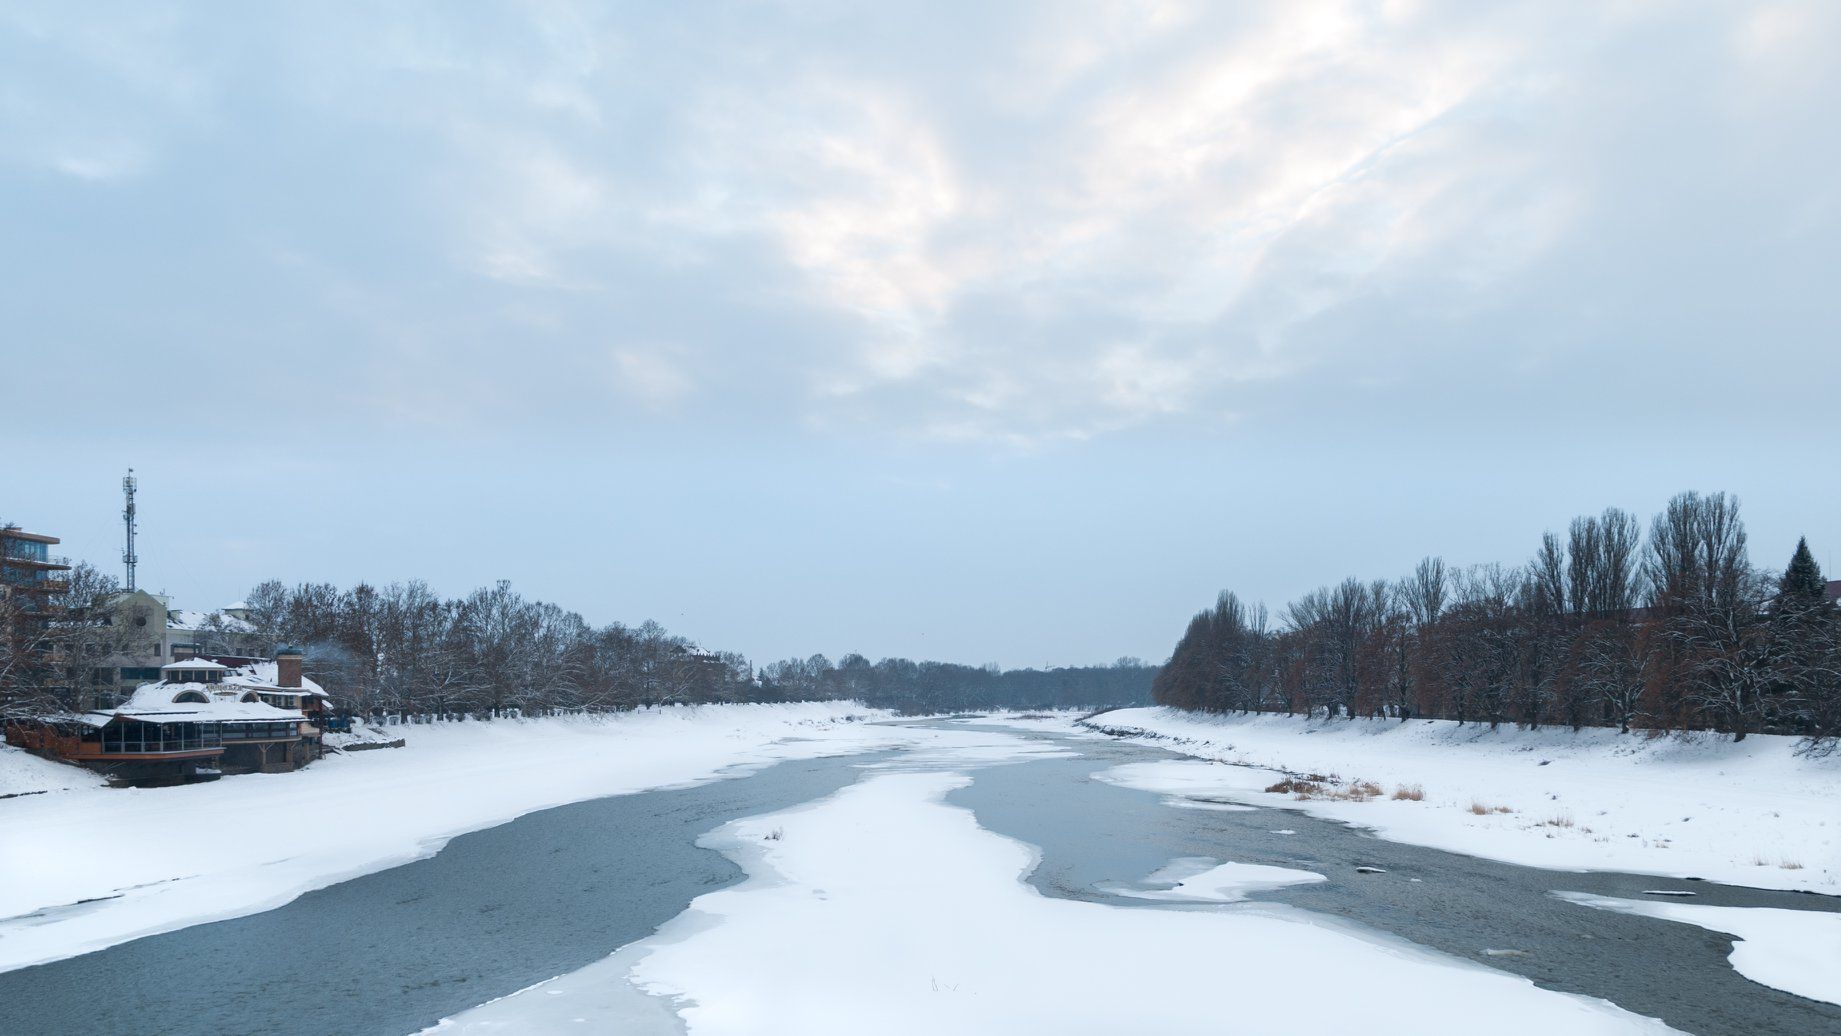 река Уж зимой